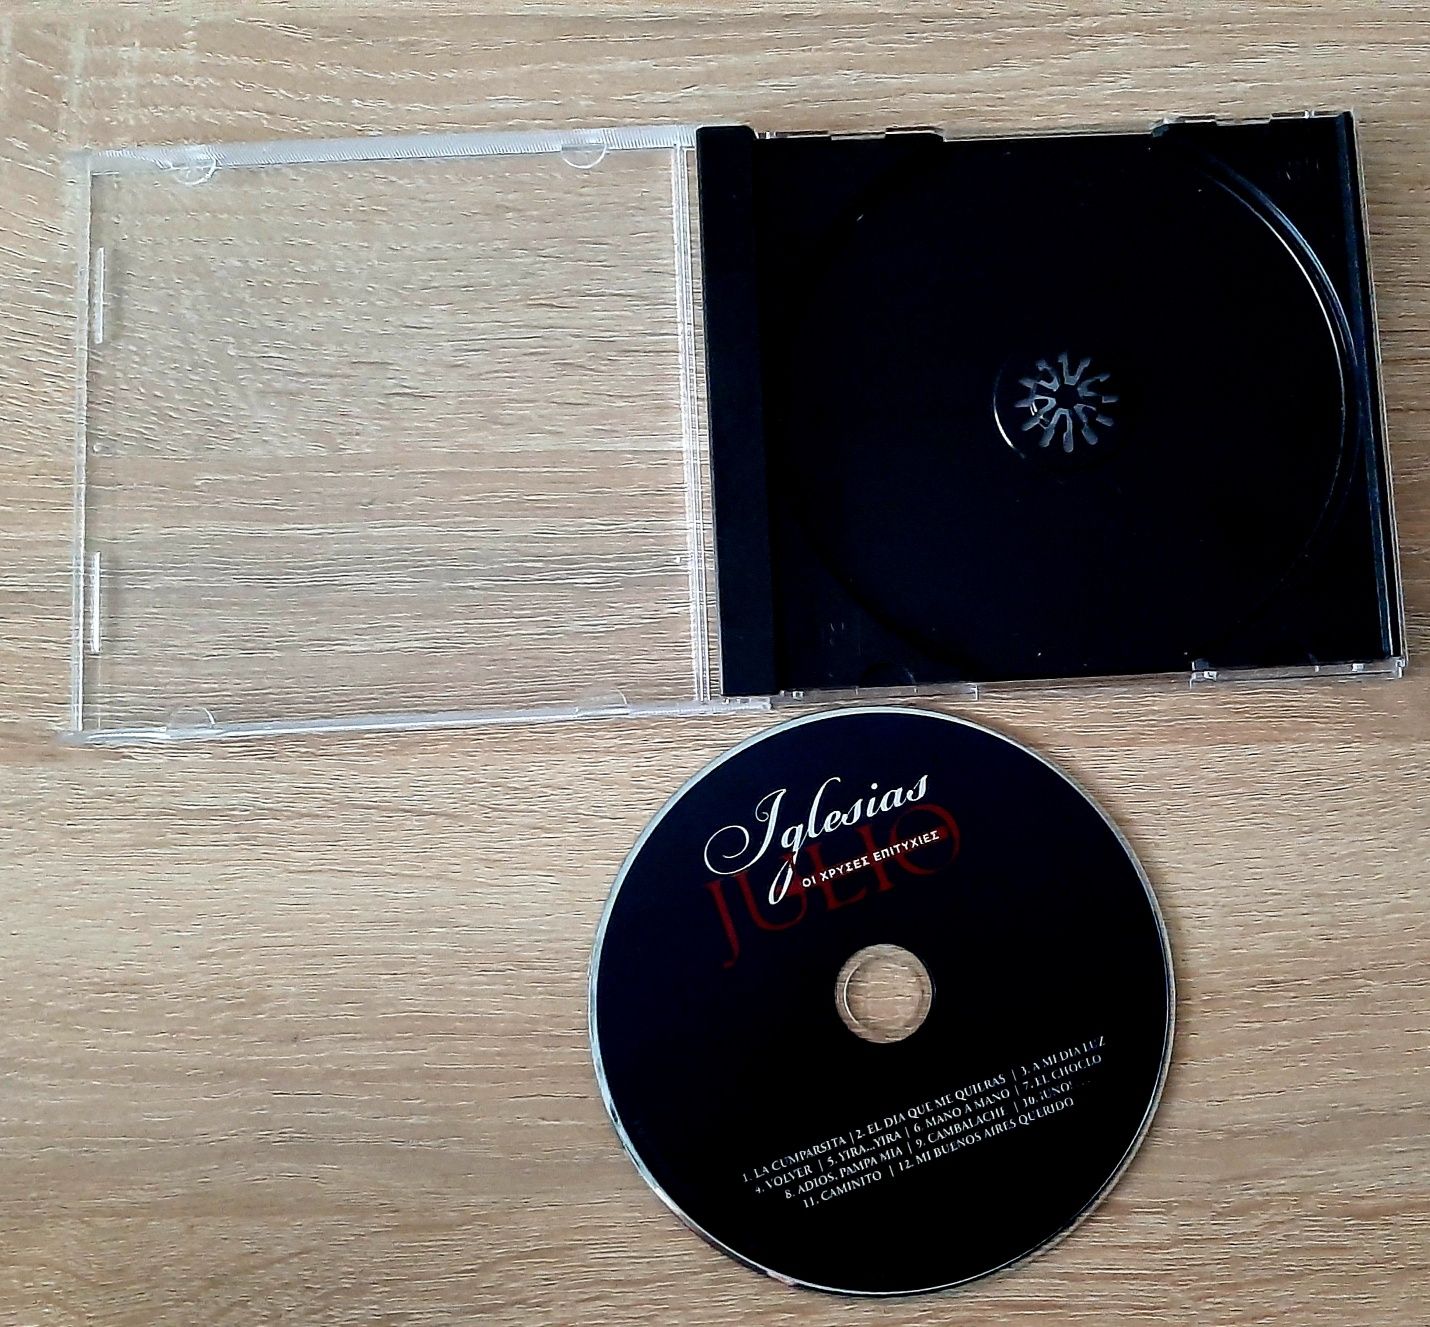 Нов сдХулио Иглесиа;оригинален  албум с любовни песни и ретро касети